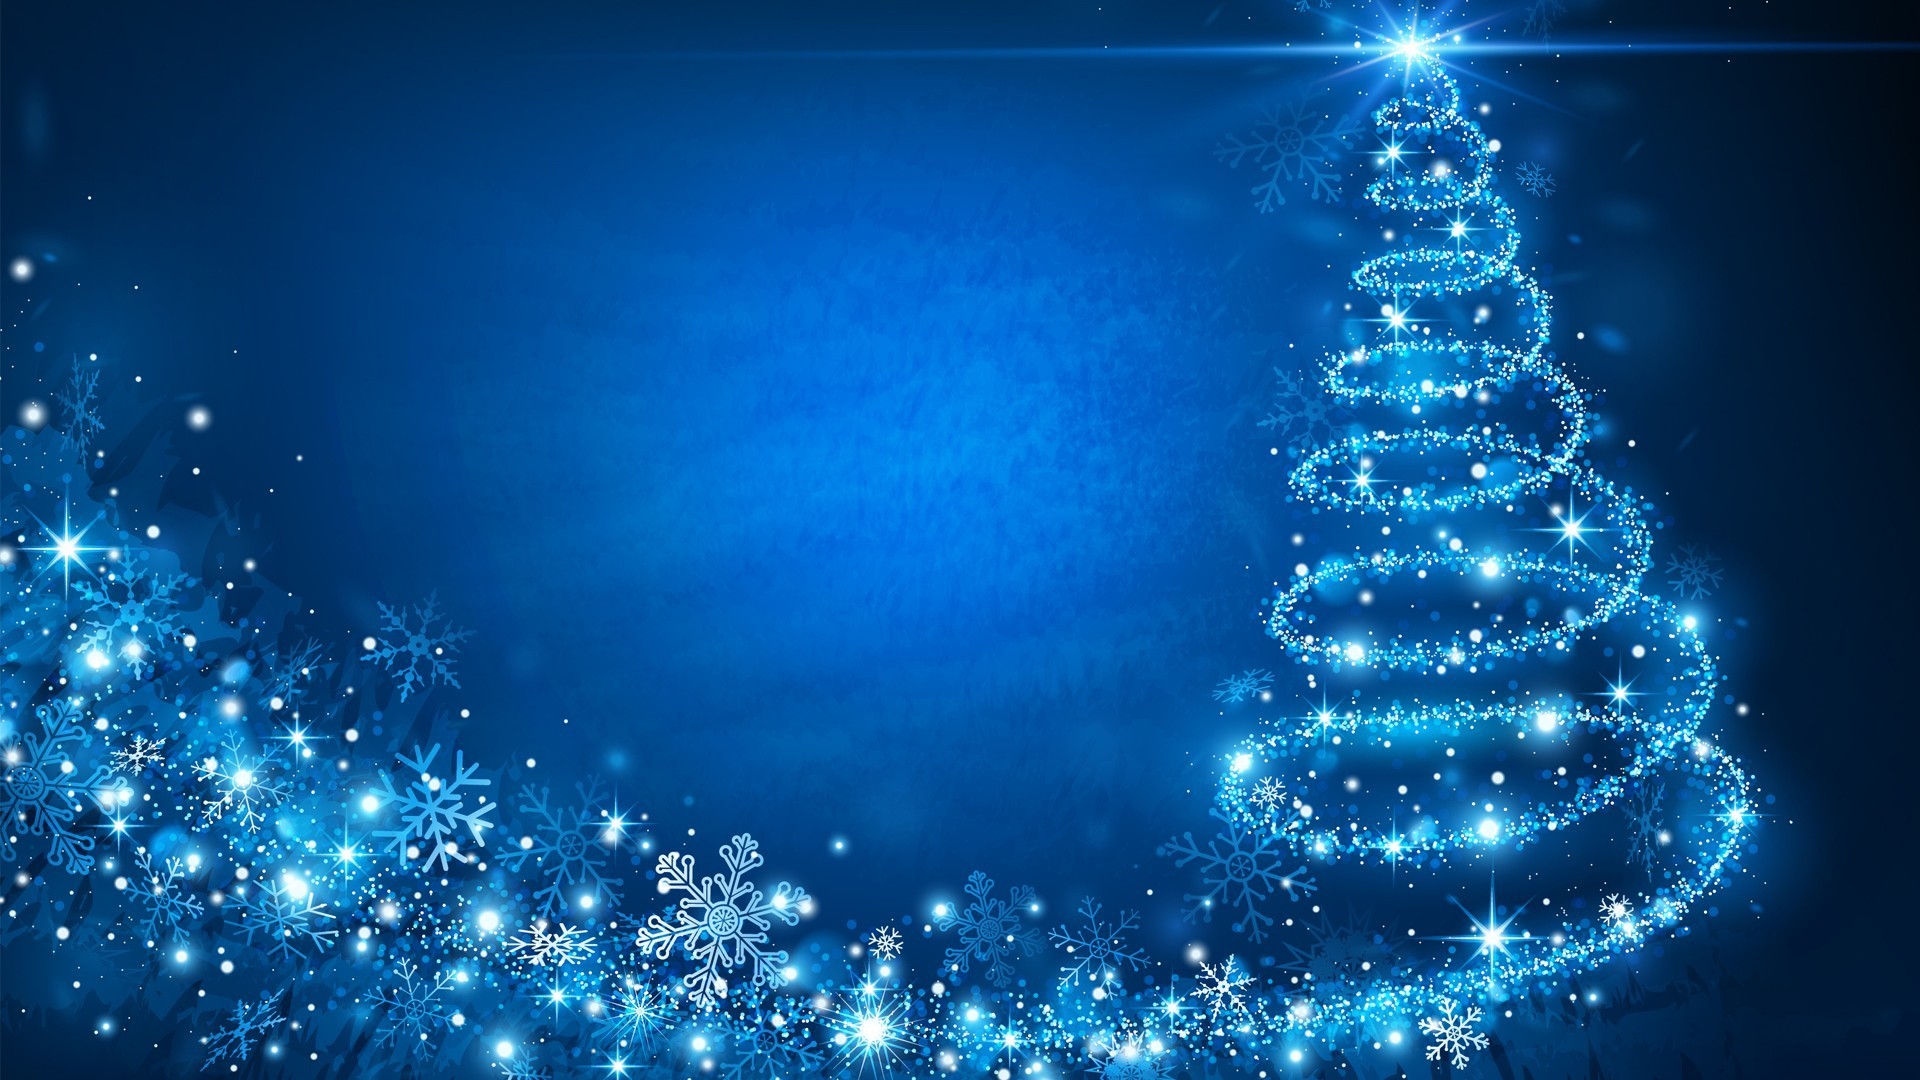 Một bức tranh nền màu xanh lạ mắt sẽ đem lại cho bạn cảm giác tươi mới và thanh lịch vào mùa lễ. Chúng tôi có một bộ sưu tập các hình nền Giáng sinh màu xanh từ tươi sáng đến nhẹ nhàng. Hãy tìm kiếm chiếc điện thoại hay máy tính của bạn với một hình ảnh tuyệt đẹp từ bộ sưu tập của chúng tôi để đón chào mùa lễ này.